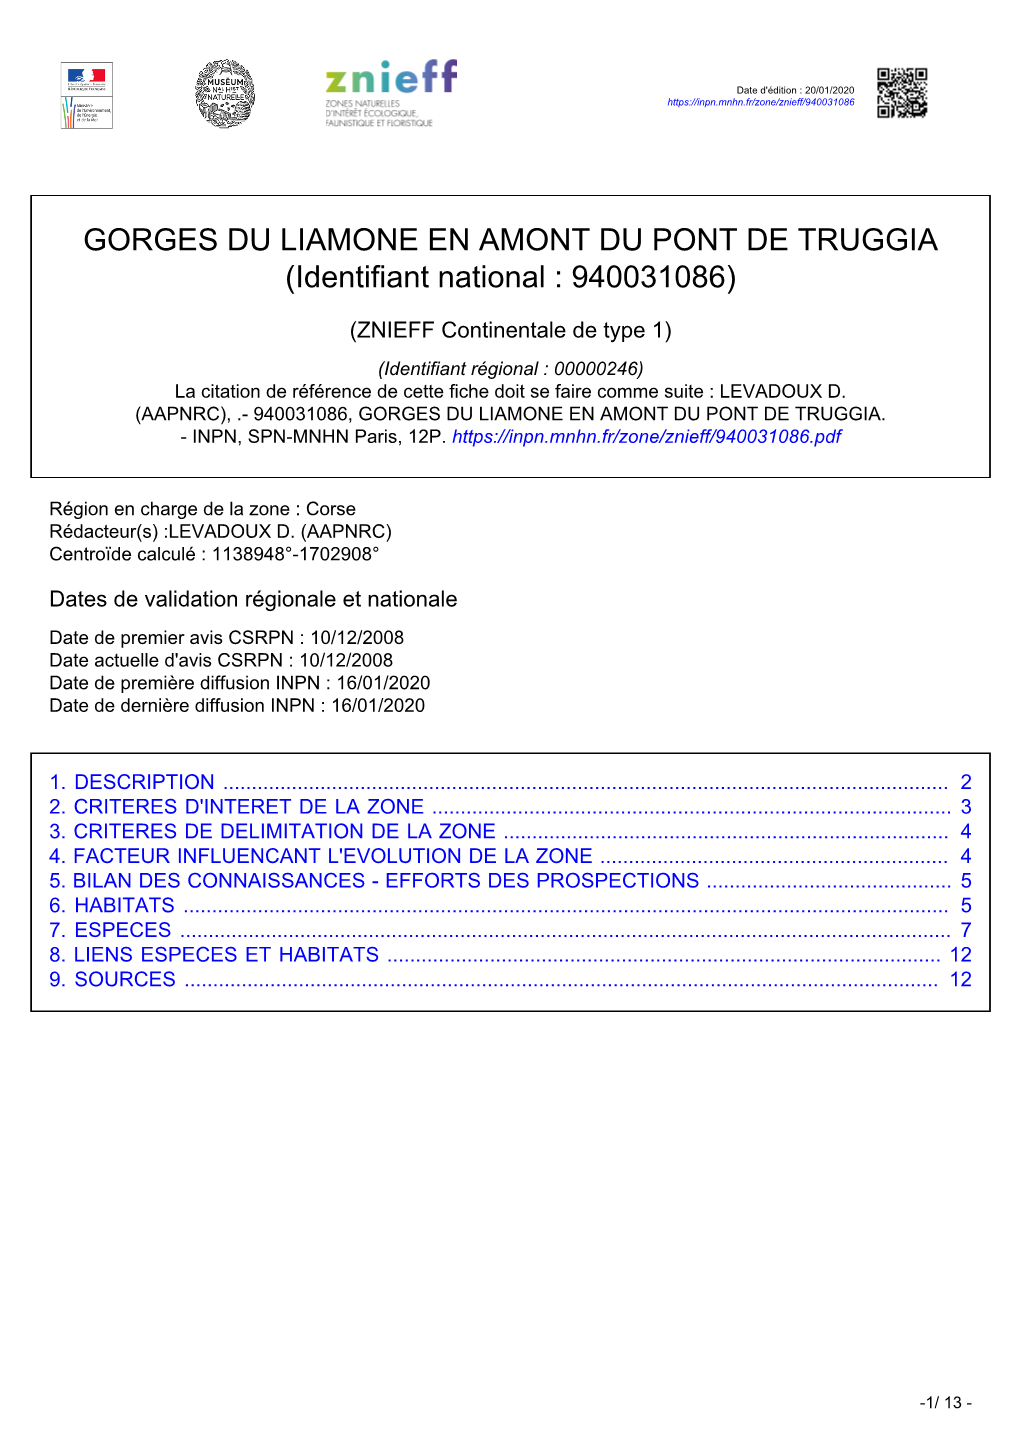 GORGES DU LIAMONE EN AMONT DU PONT DE TRUGGIA (Identifiant National : 940031086)